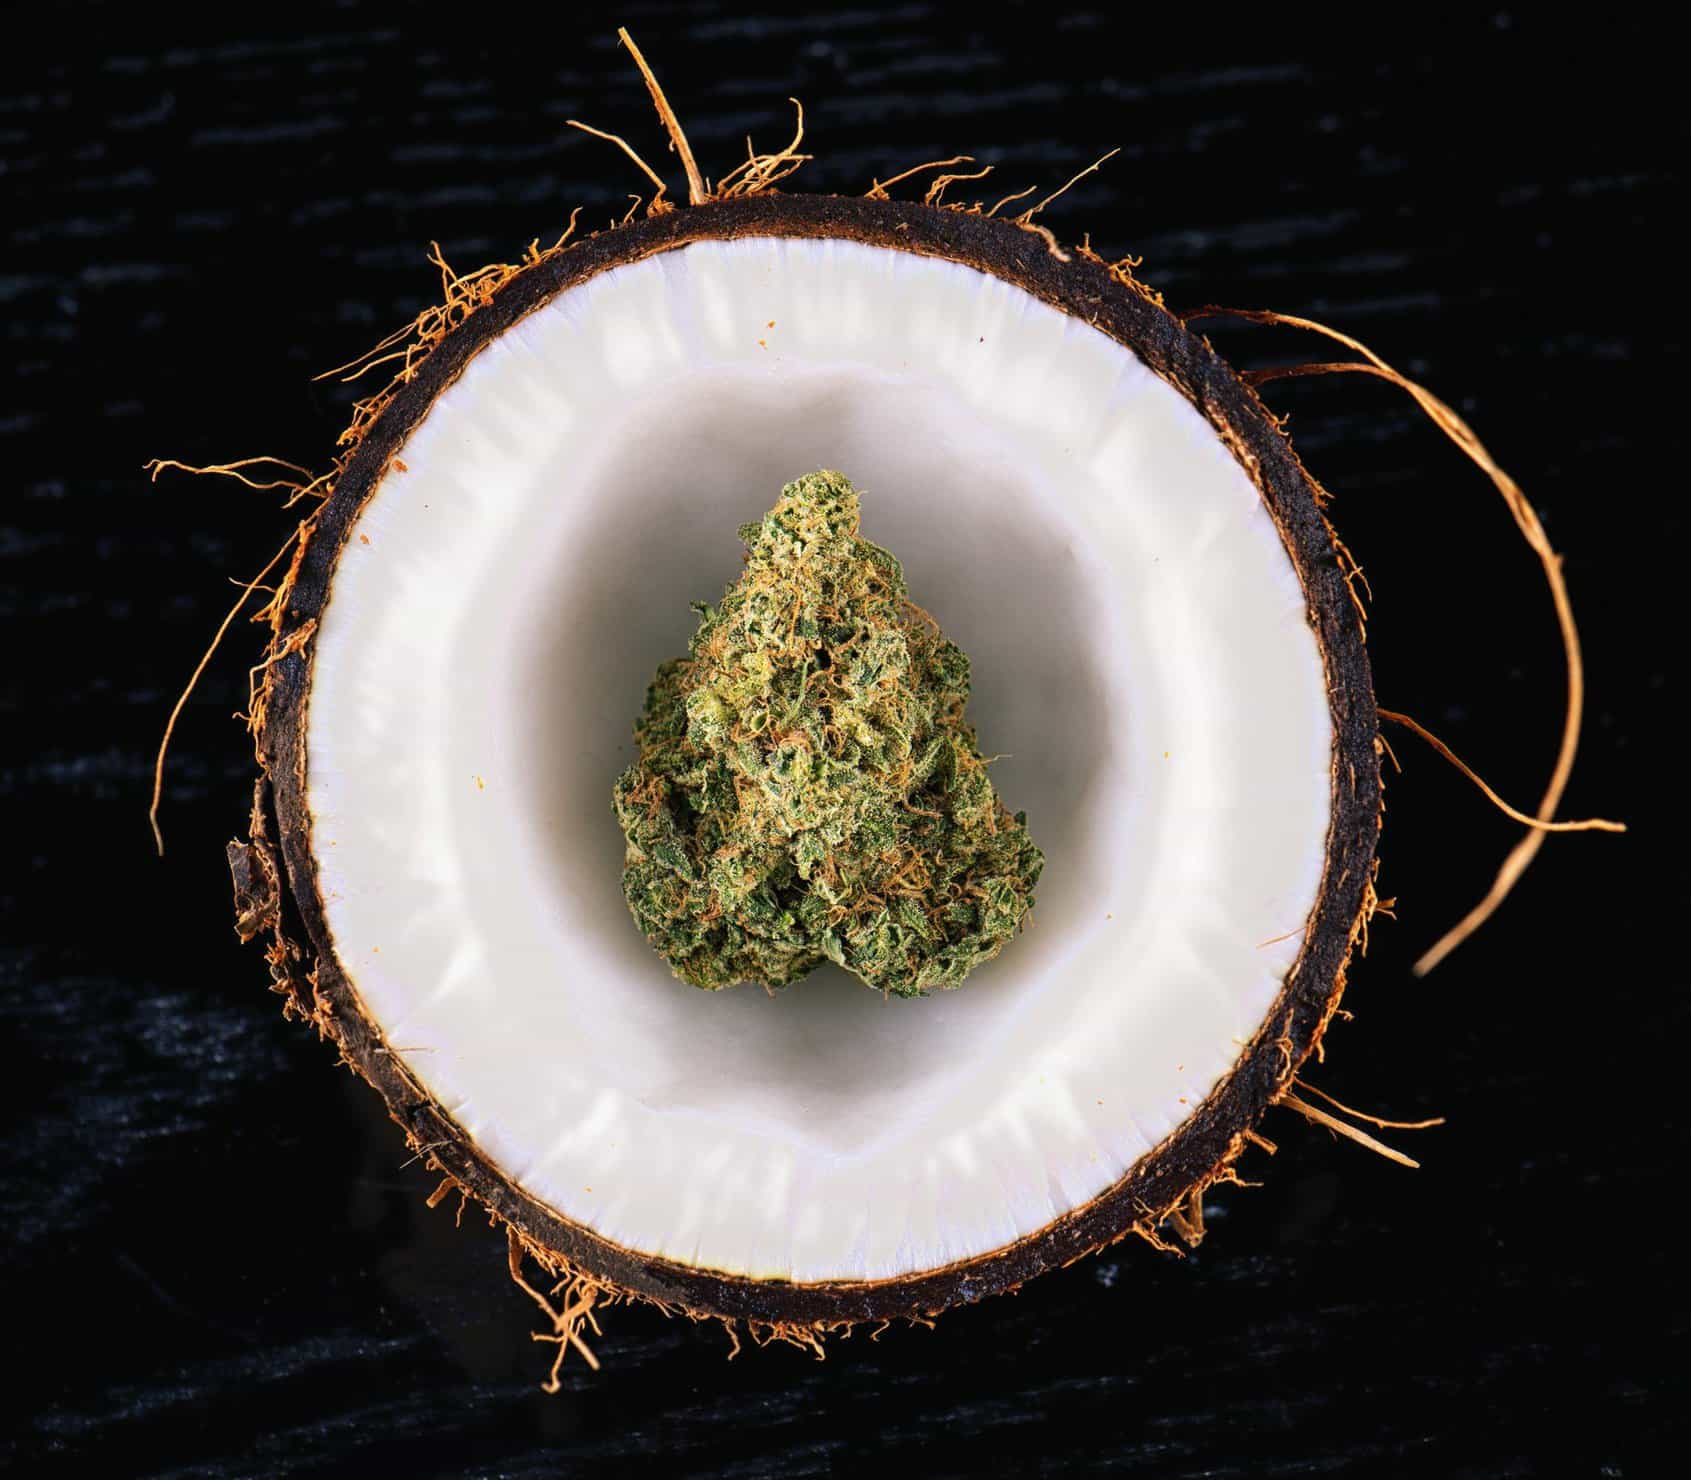 Coconut Water As Organic Cannabis Fertilizer